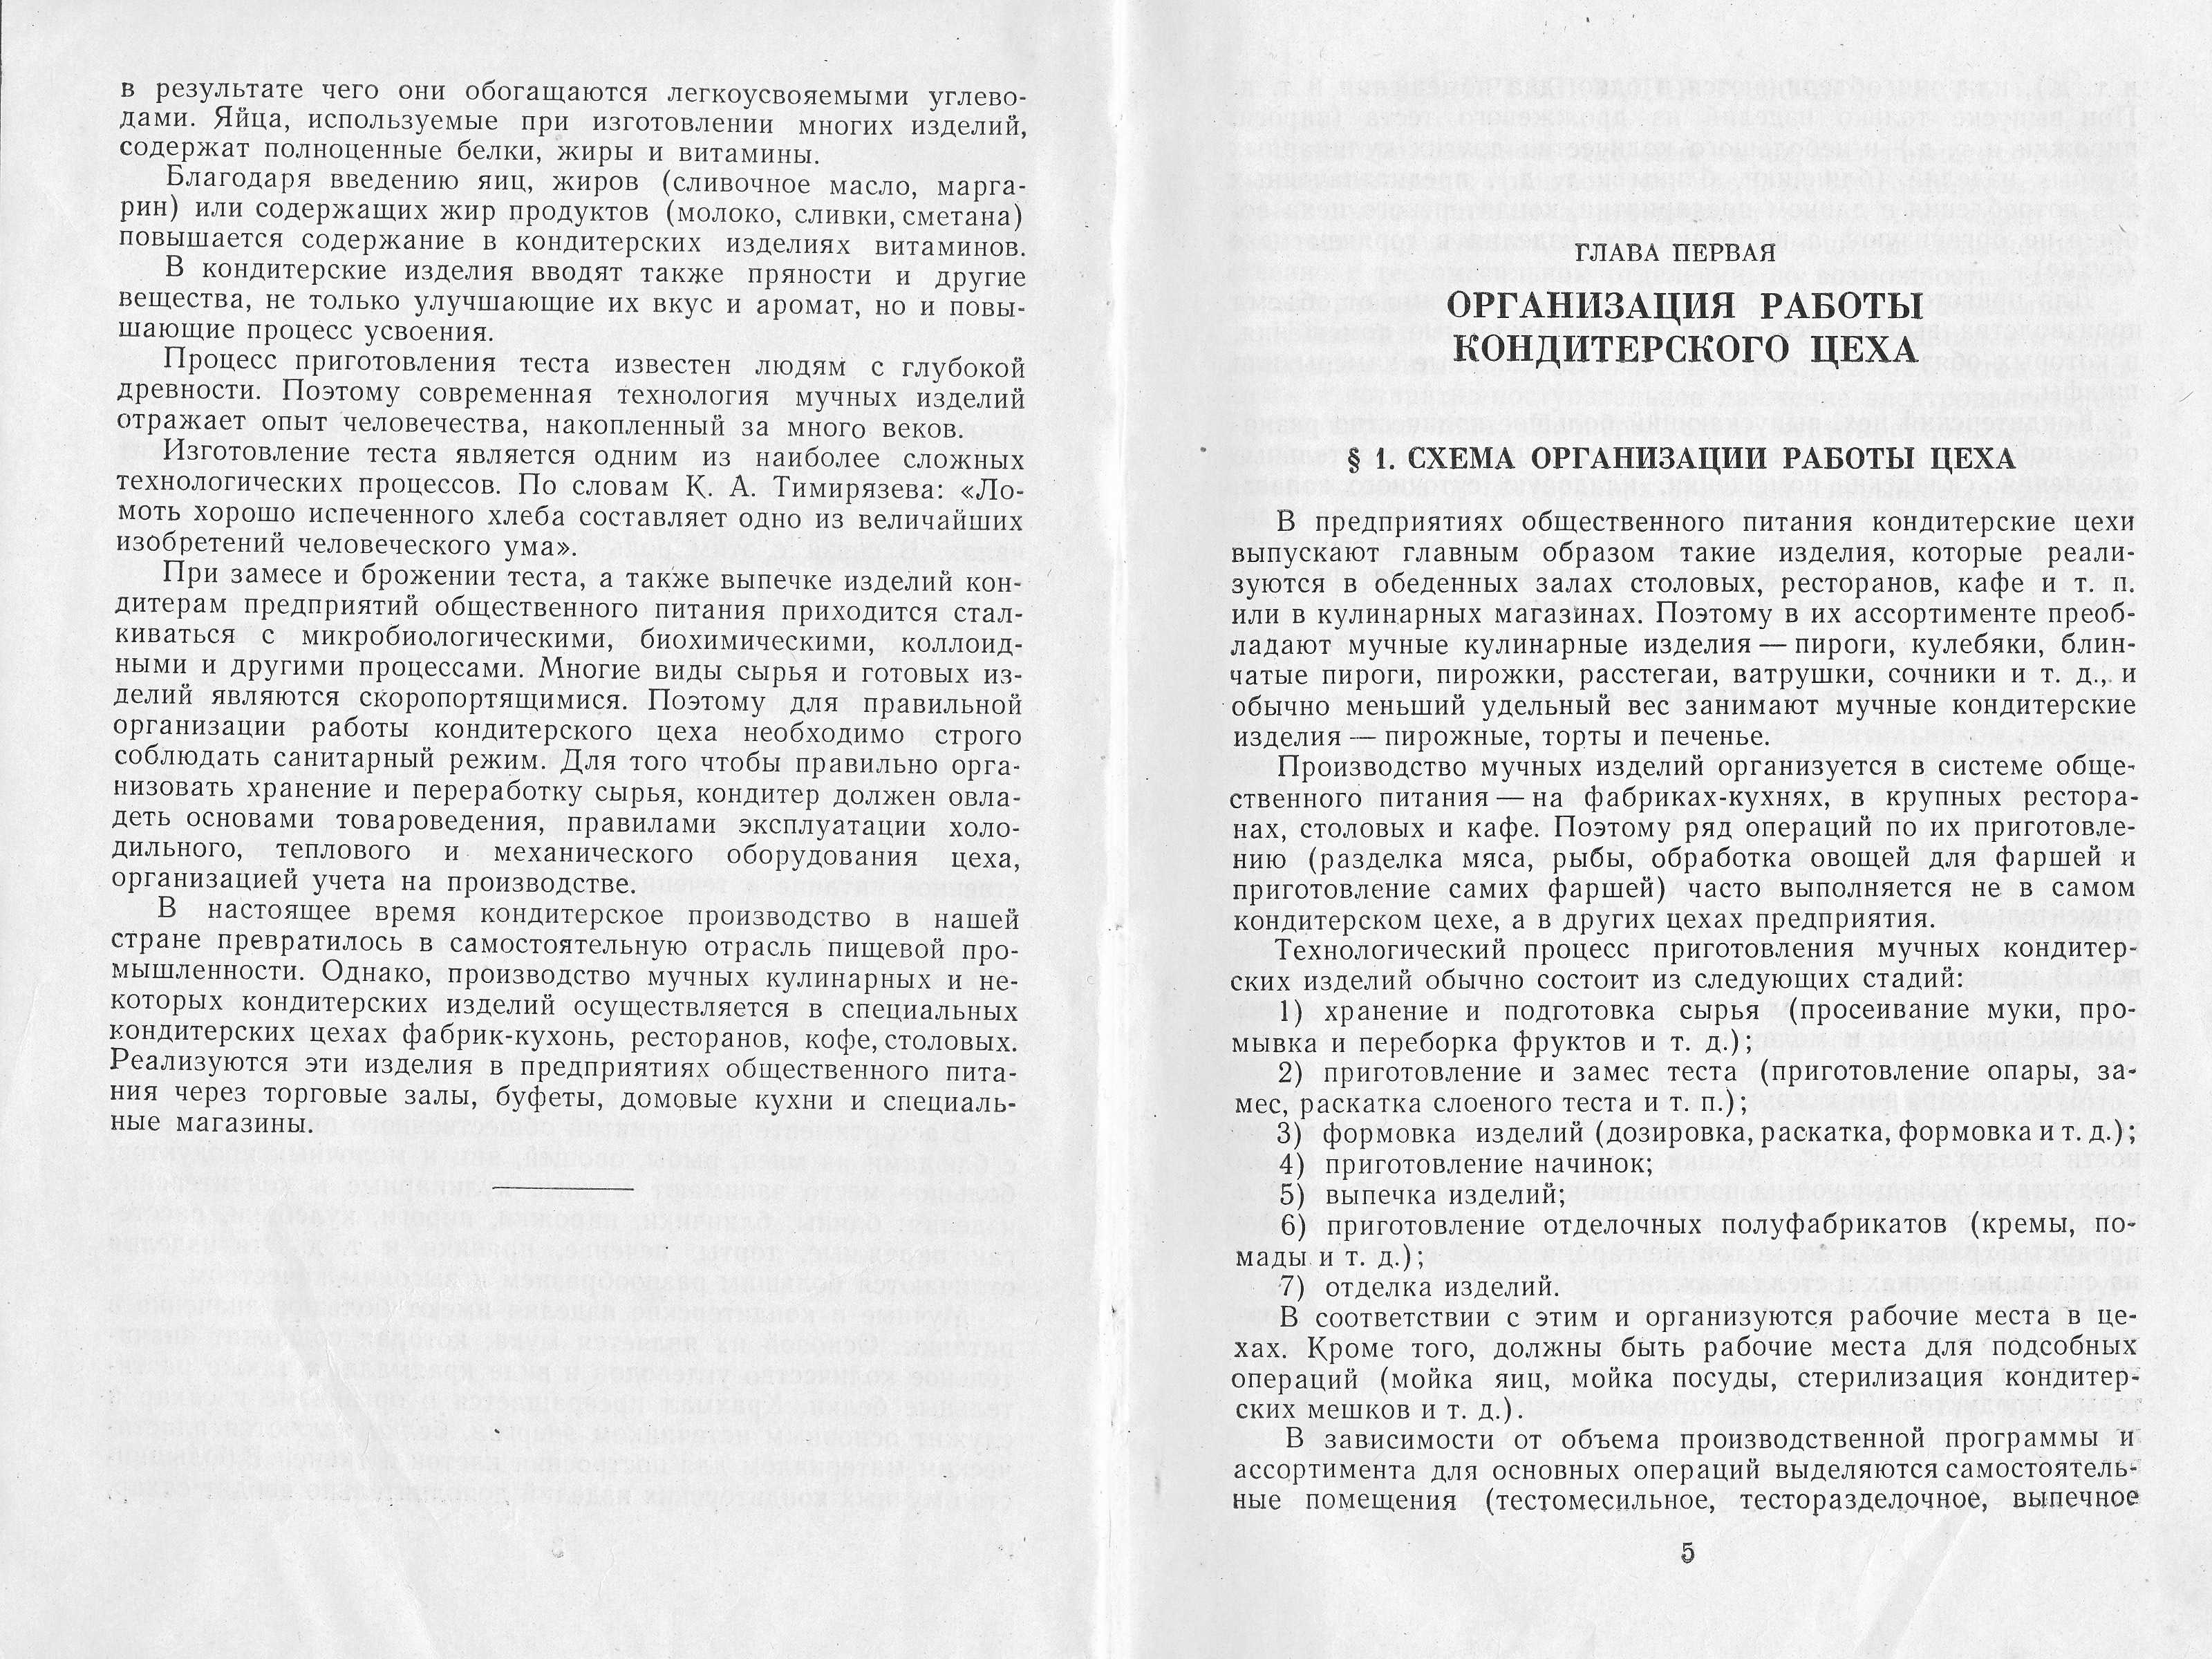 Приготовление мучных кондитерских изделий Н.Г. Бутейкис, Р.П. Кенгис 1963 г. страницы 4‒5